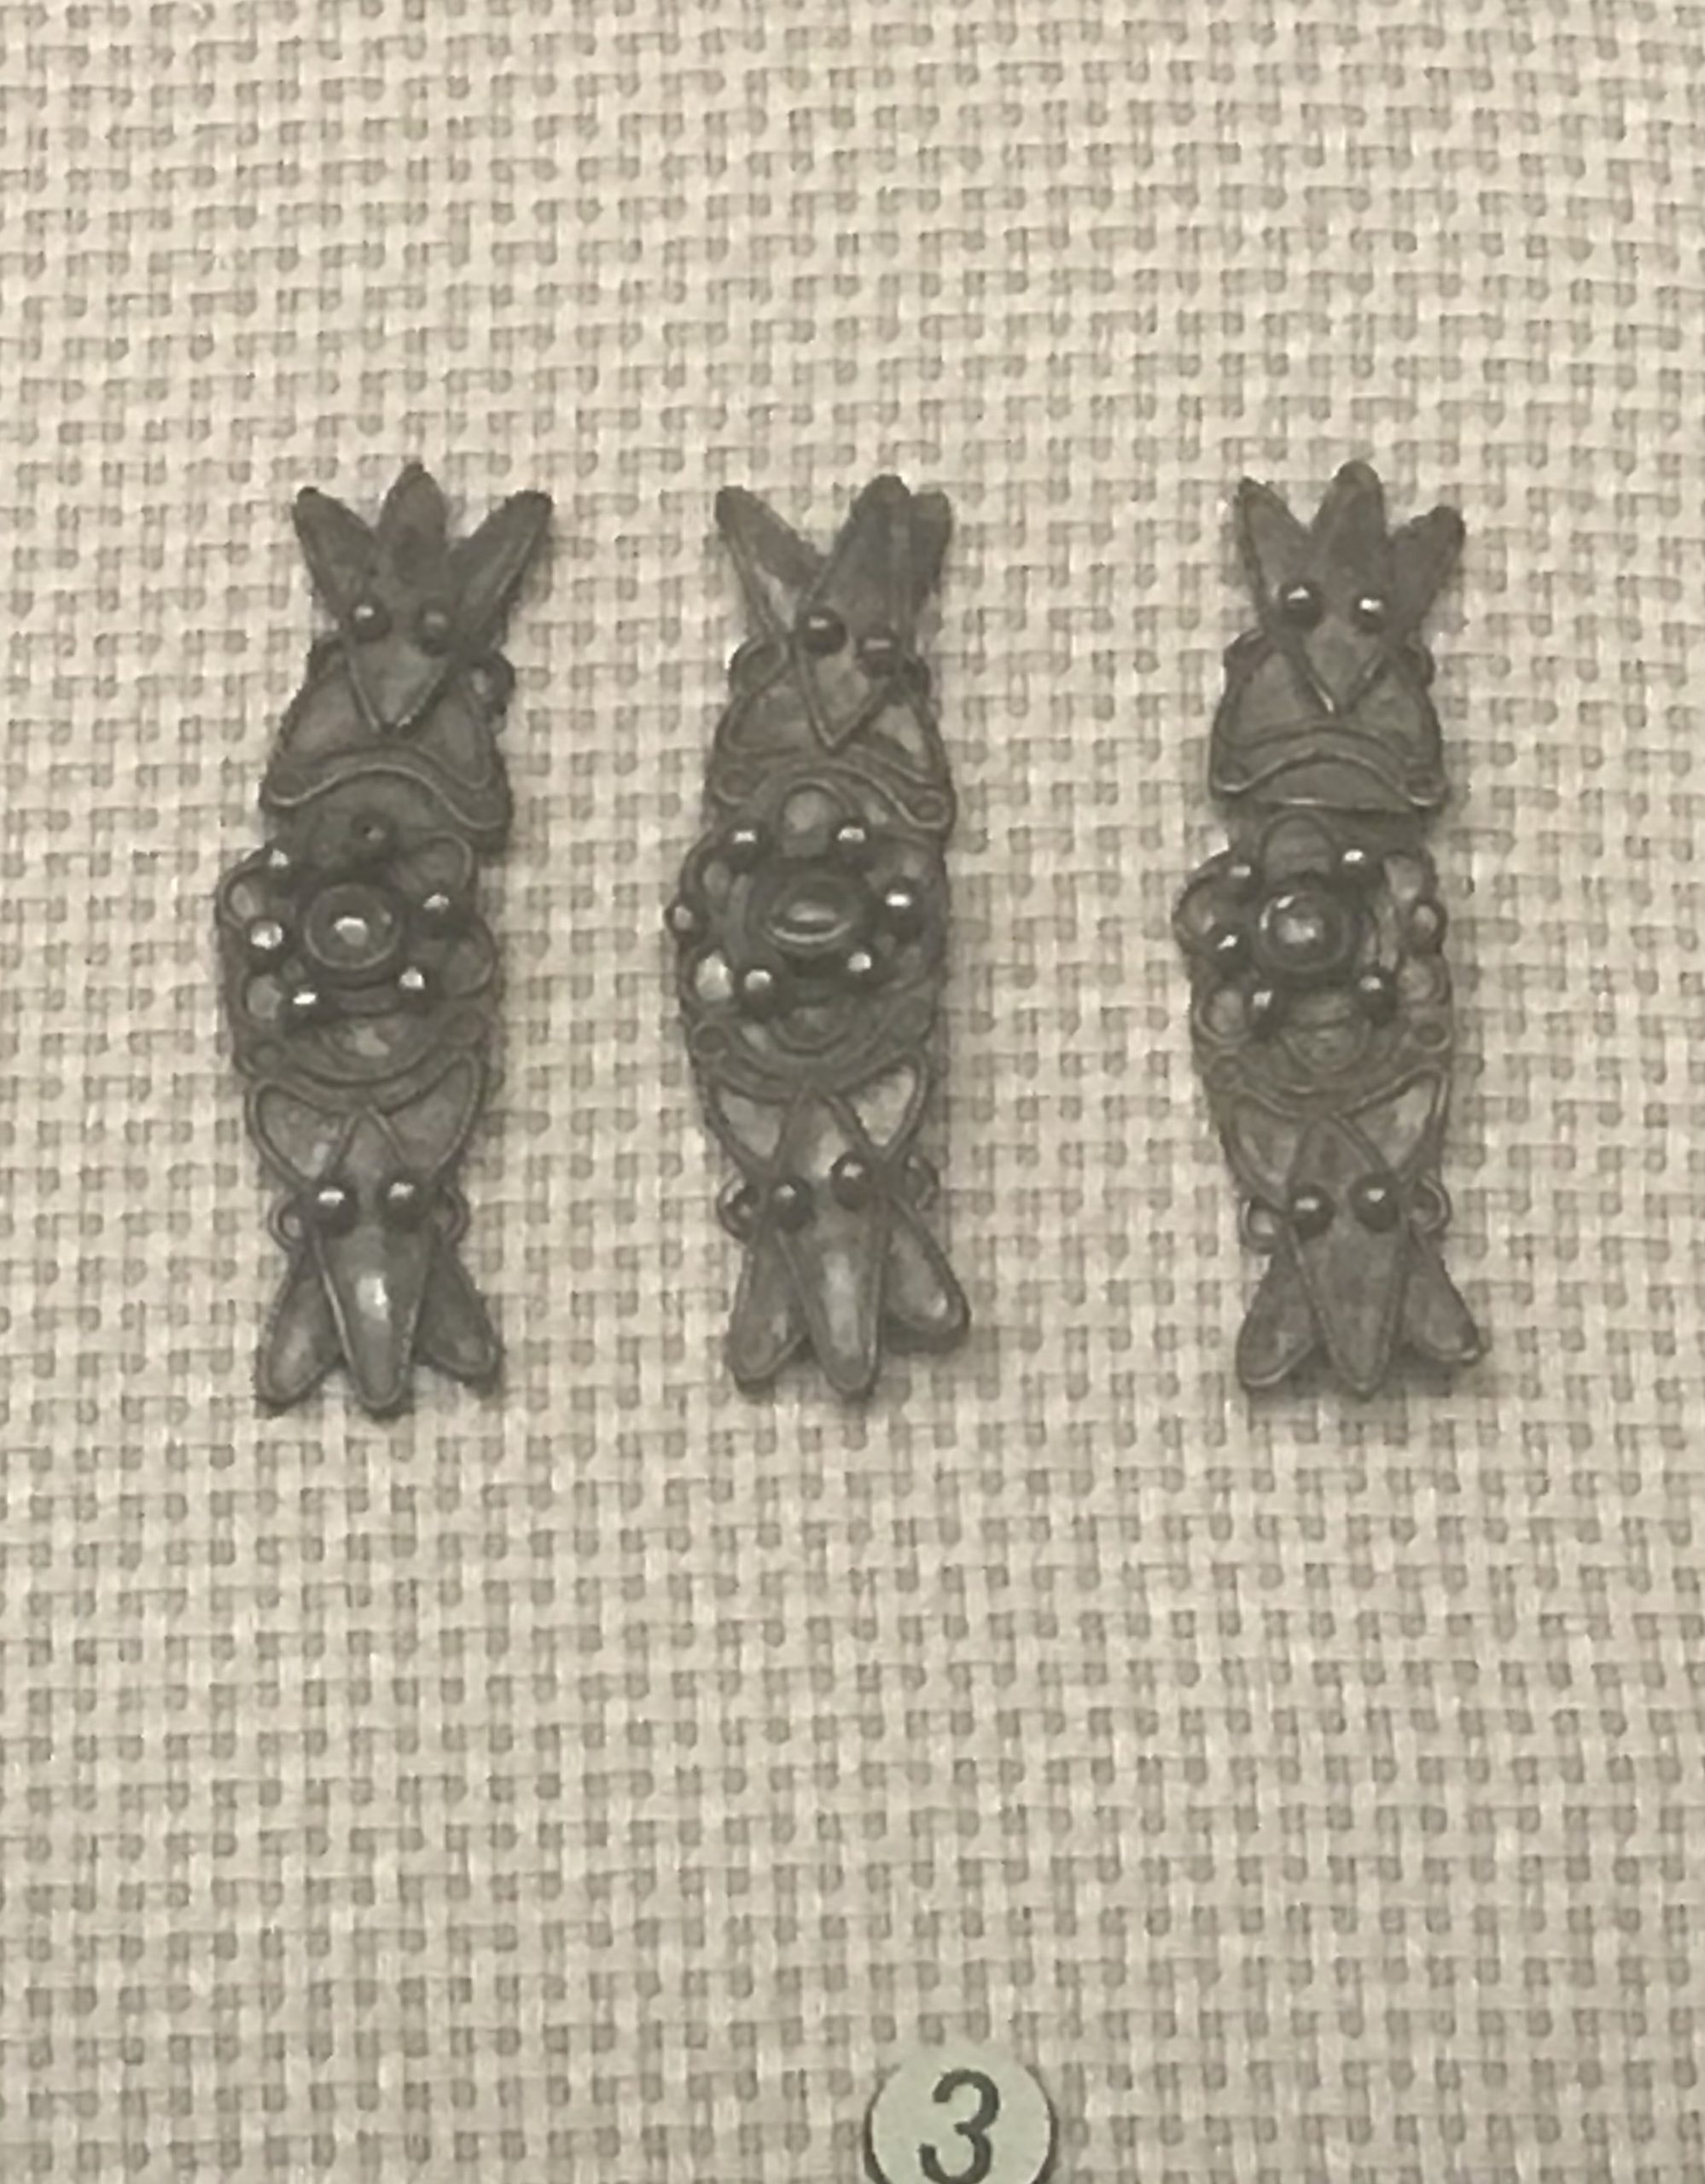 排形銀領花-棱形鏤空銀領飾--銀領ボタン-彜族アクセサリー-四川民族文物館-四川博物館-成都